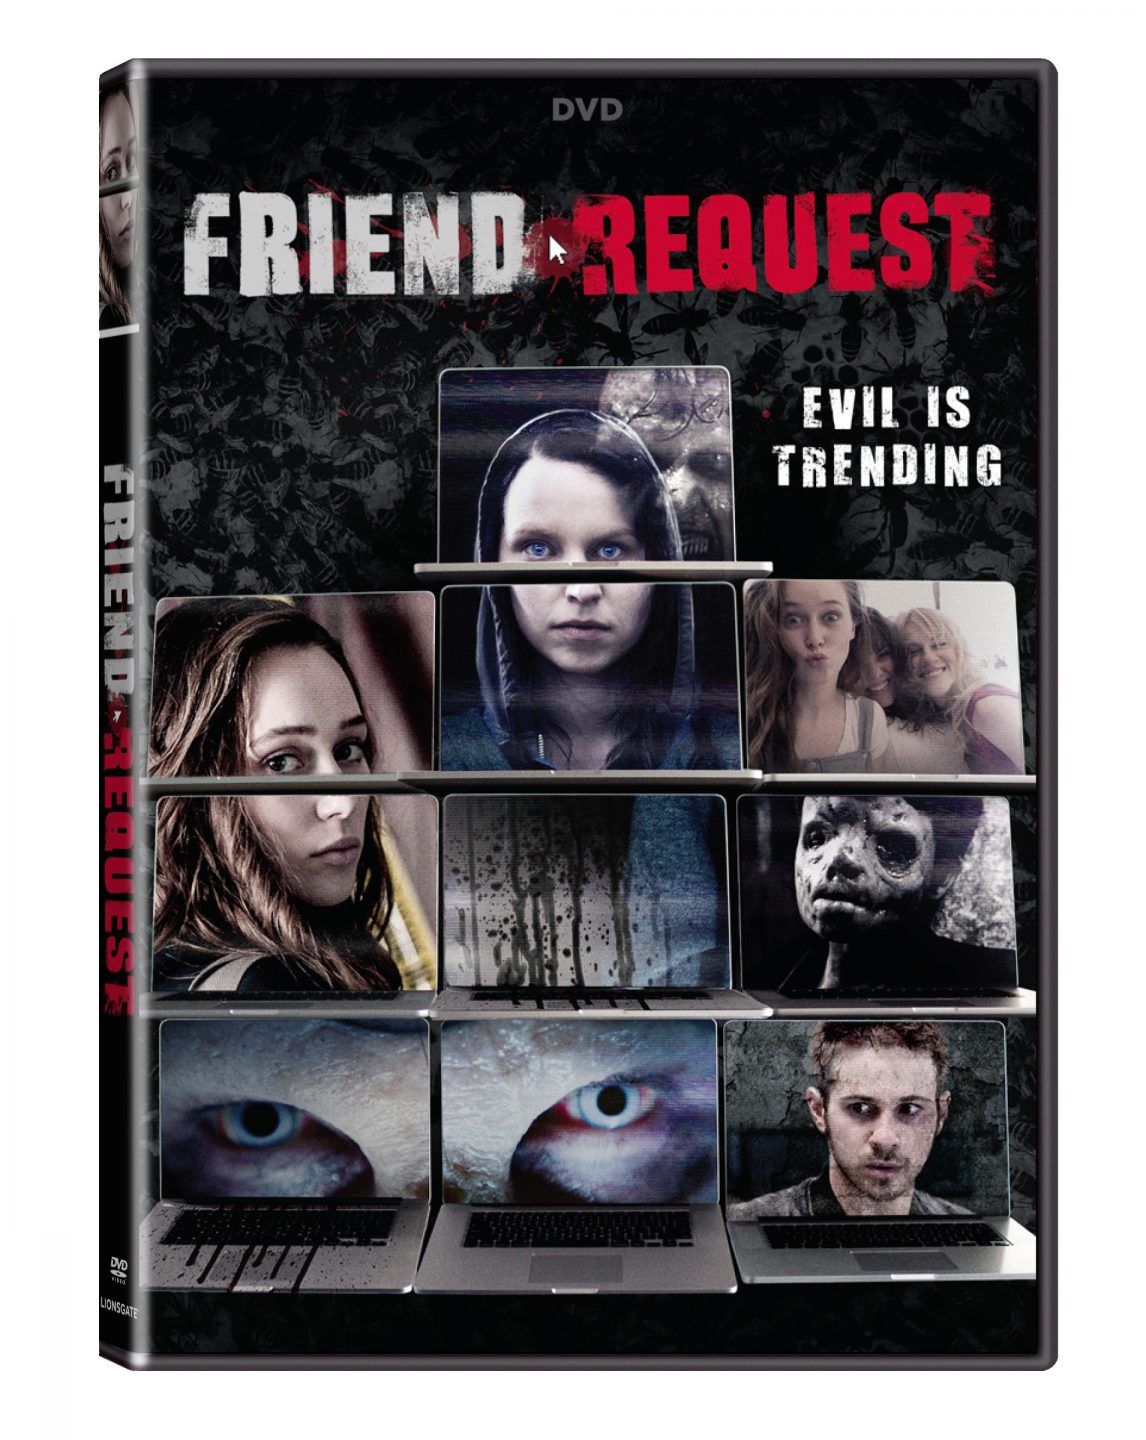 Friend Request DVD cover (Lionsgate Home Entertainment)